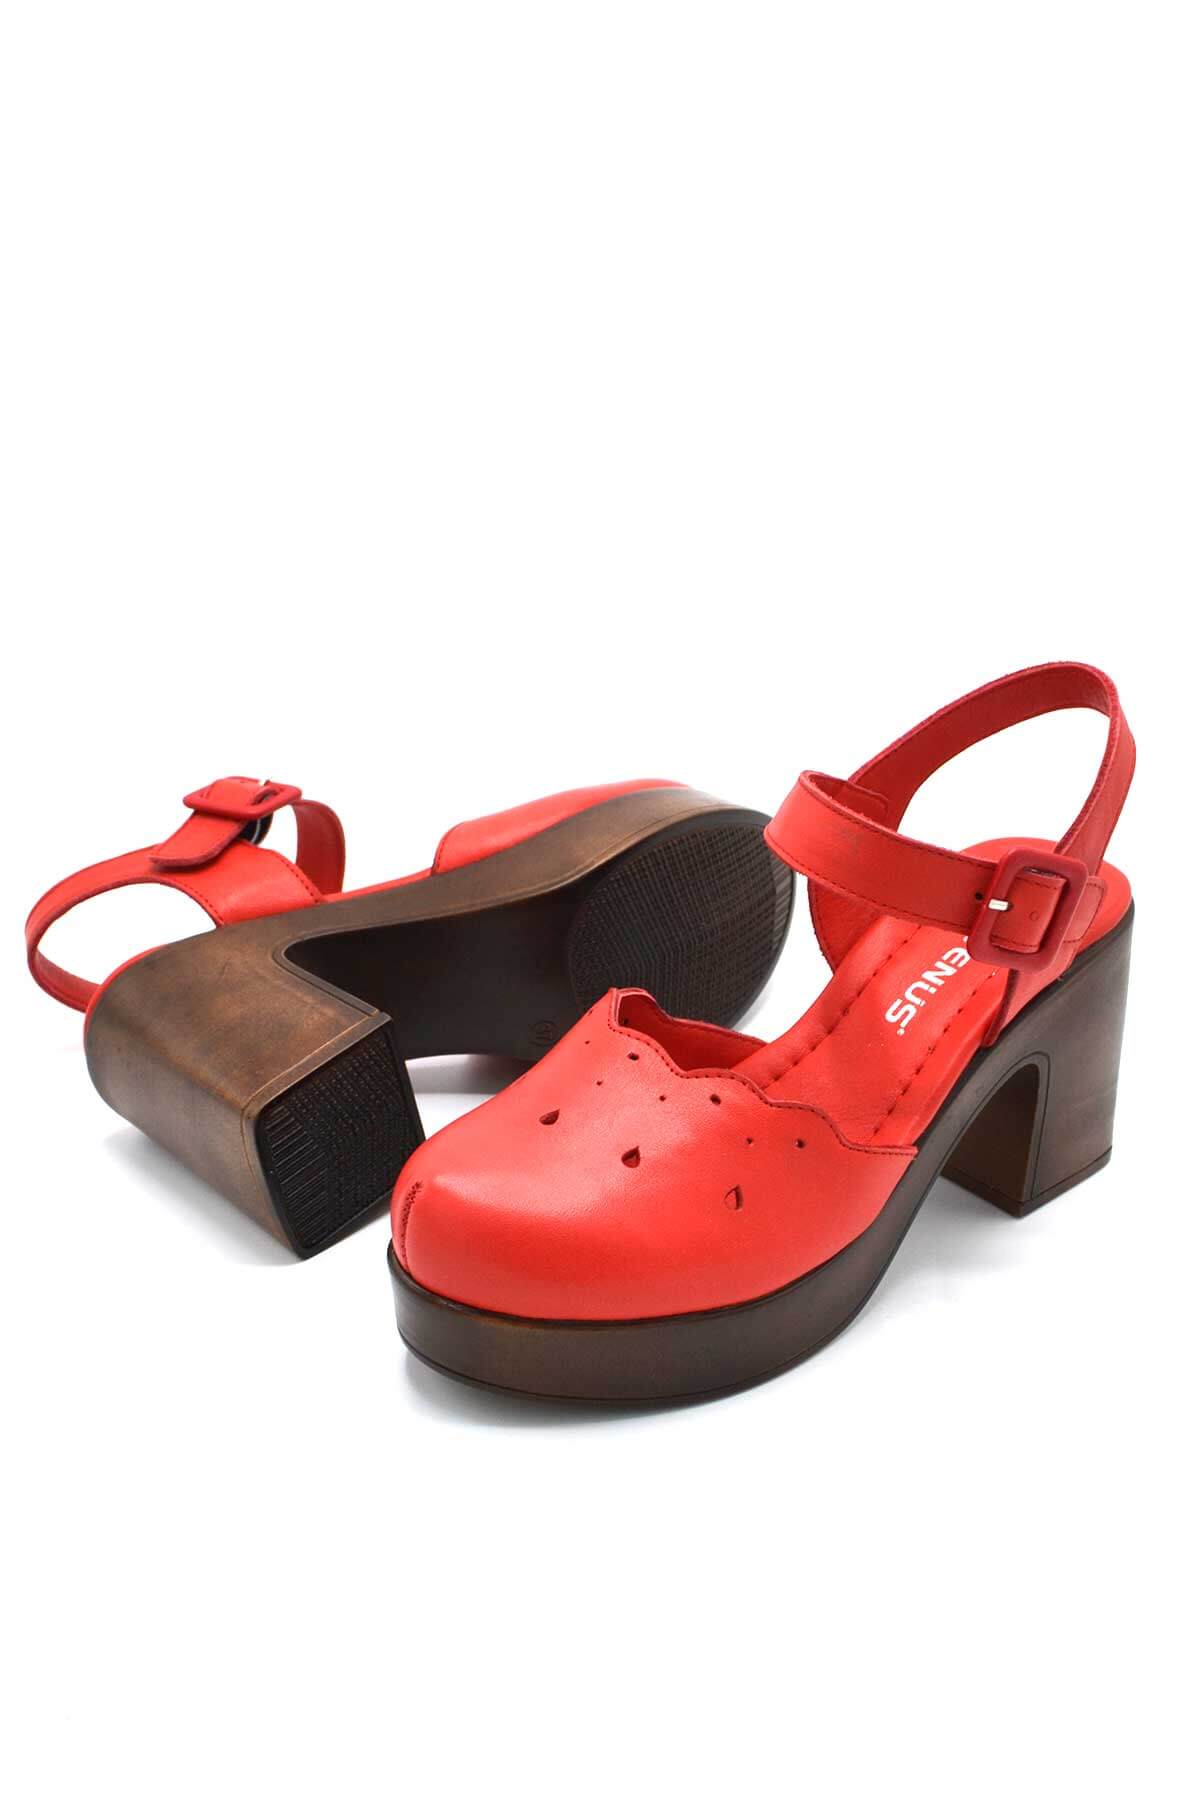 Kadın Apartman Topuk Deri Sandalet Kırmızı 2217001Y - Thumbnail